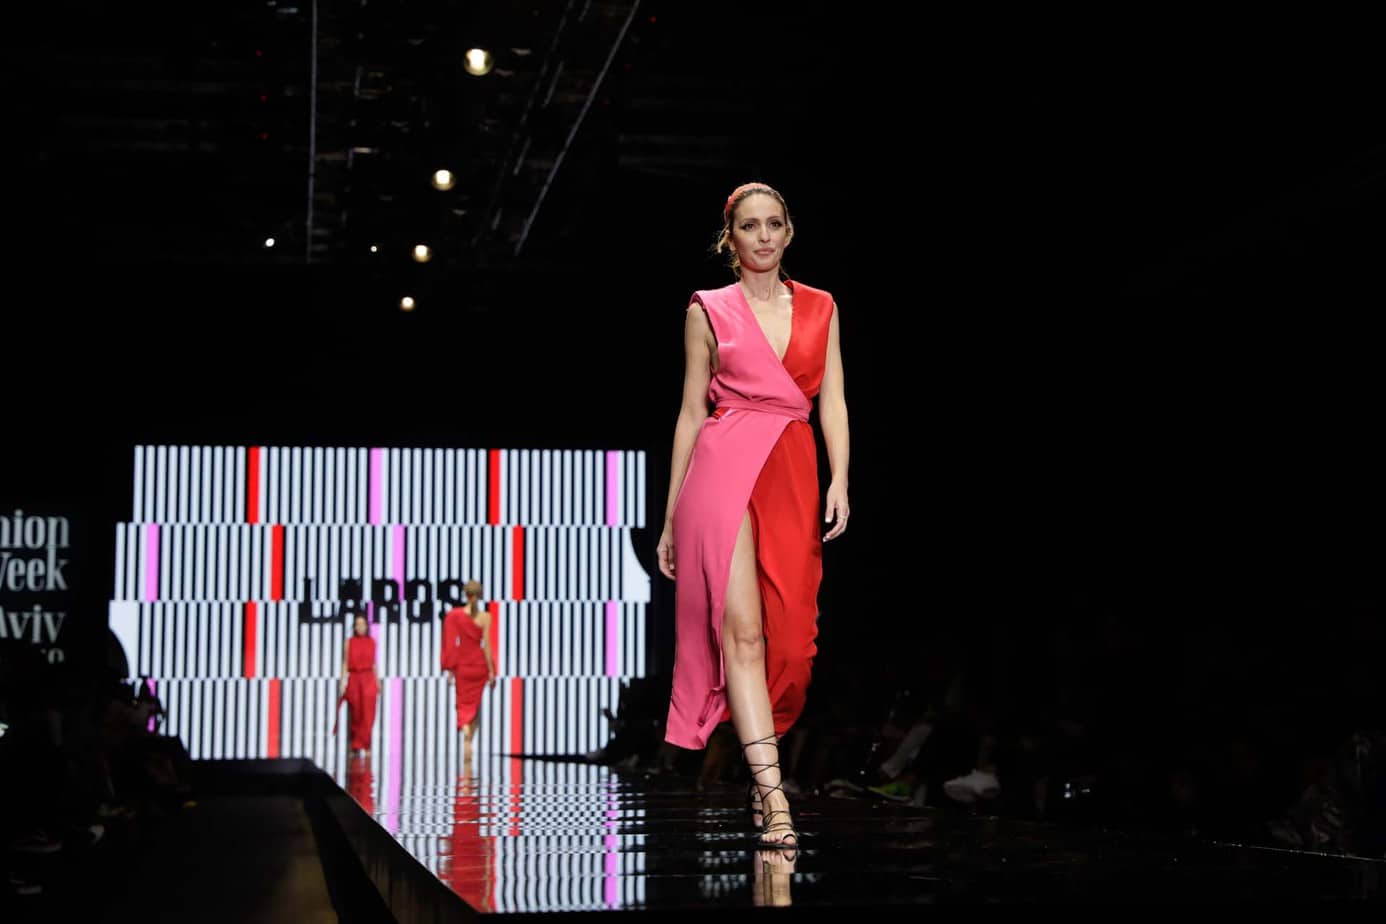 מלי לוי, קולקציה עידן לרוס, תצוגת אופנה עידן לרוס שבוע האופנה תל אביב 2019, צילום עומר קפלן - 6